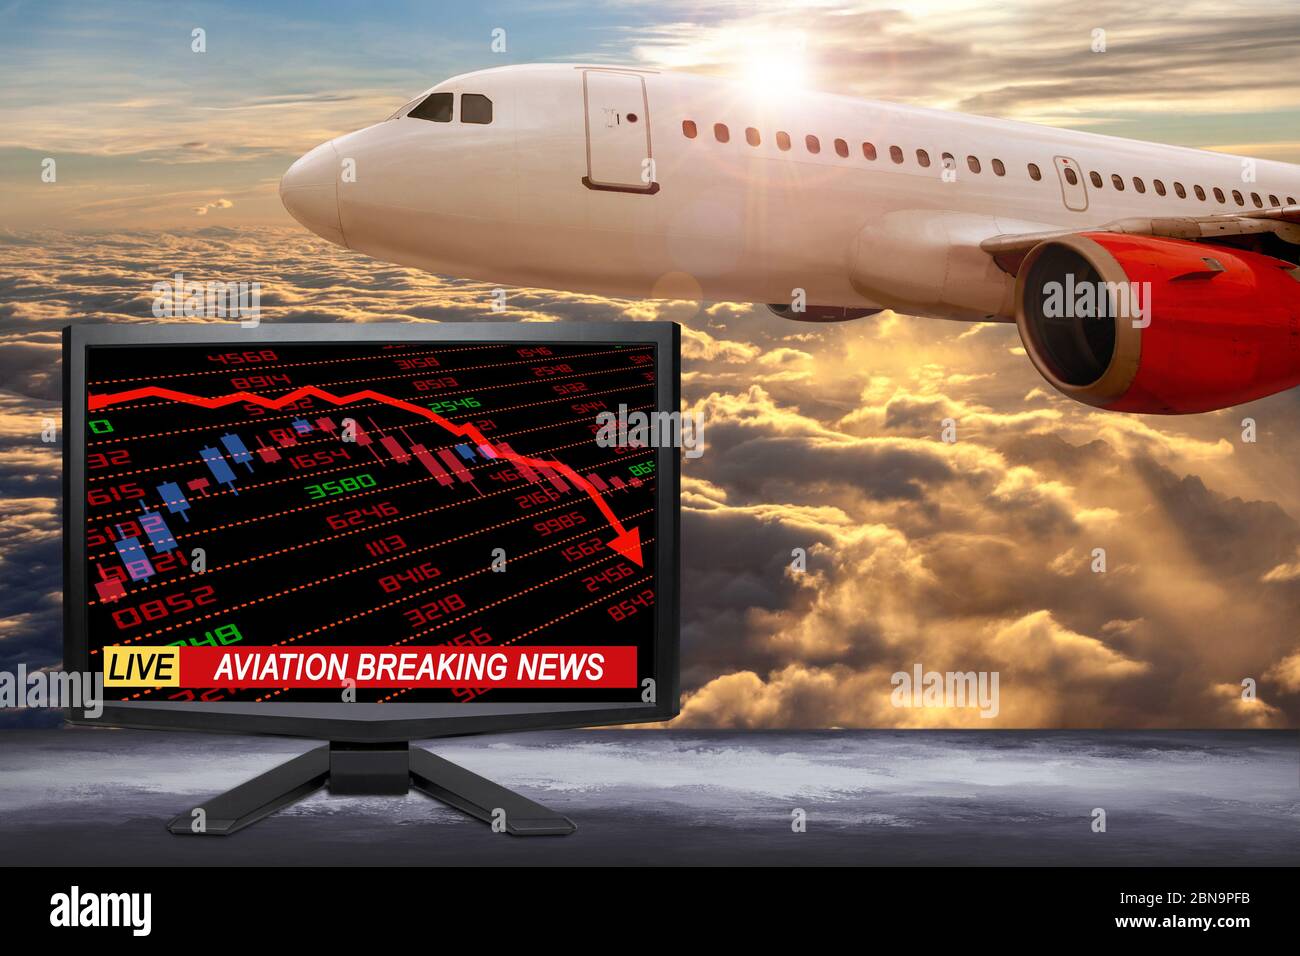 Aktuelle Nachrichten über das Geschäft auf dem Fernsehbildschirm mit Aktien- und Finanzindikatoren, die zeigen, dass die Luftfahrt- und Reiseindustrie aufgrund von Covi in einer Krise steckt Stockfoto